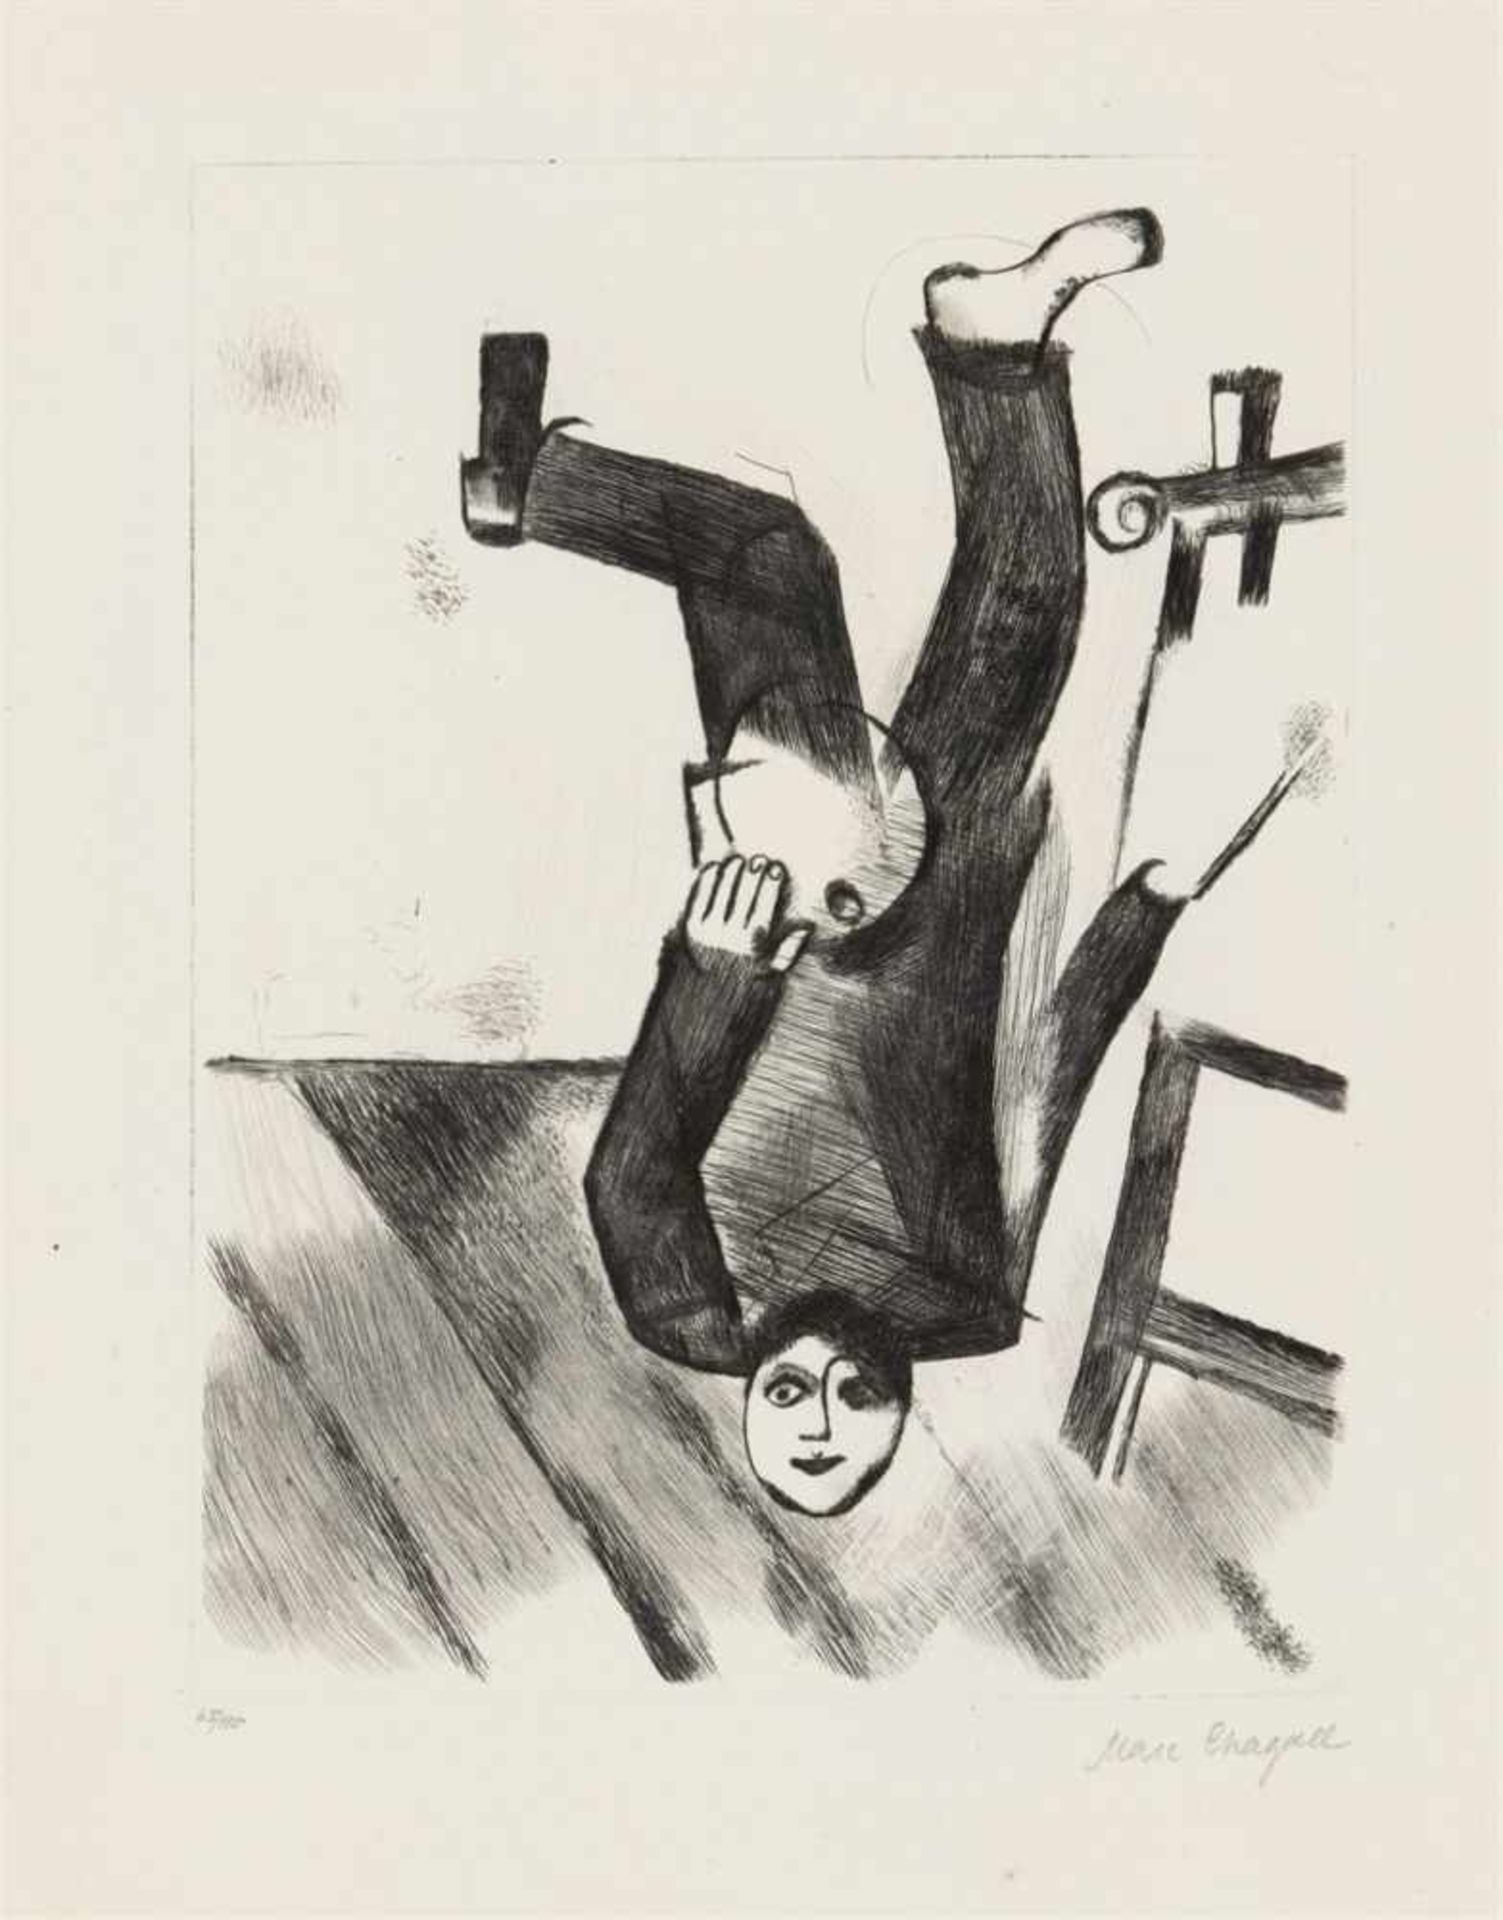 Marc ChagallAn der StaffeleiOriginal-Radierung auf Büttenpapier. 24,6 x 18,7 cm (44,4 x 34,3 cm).